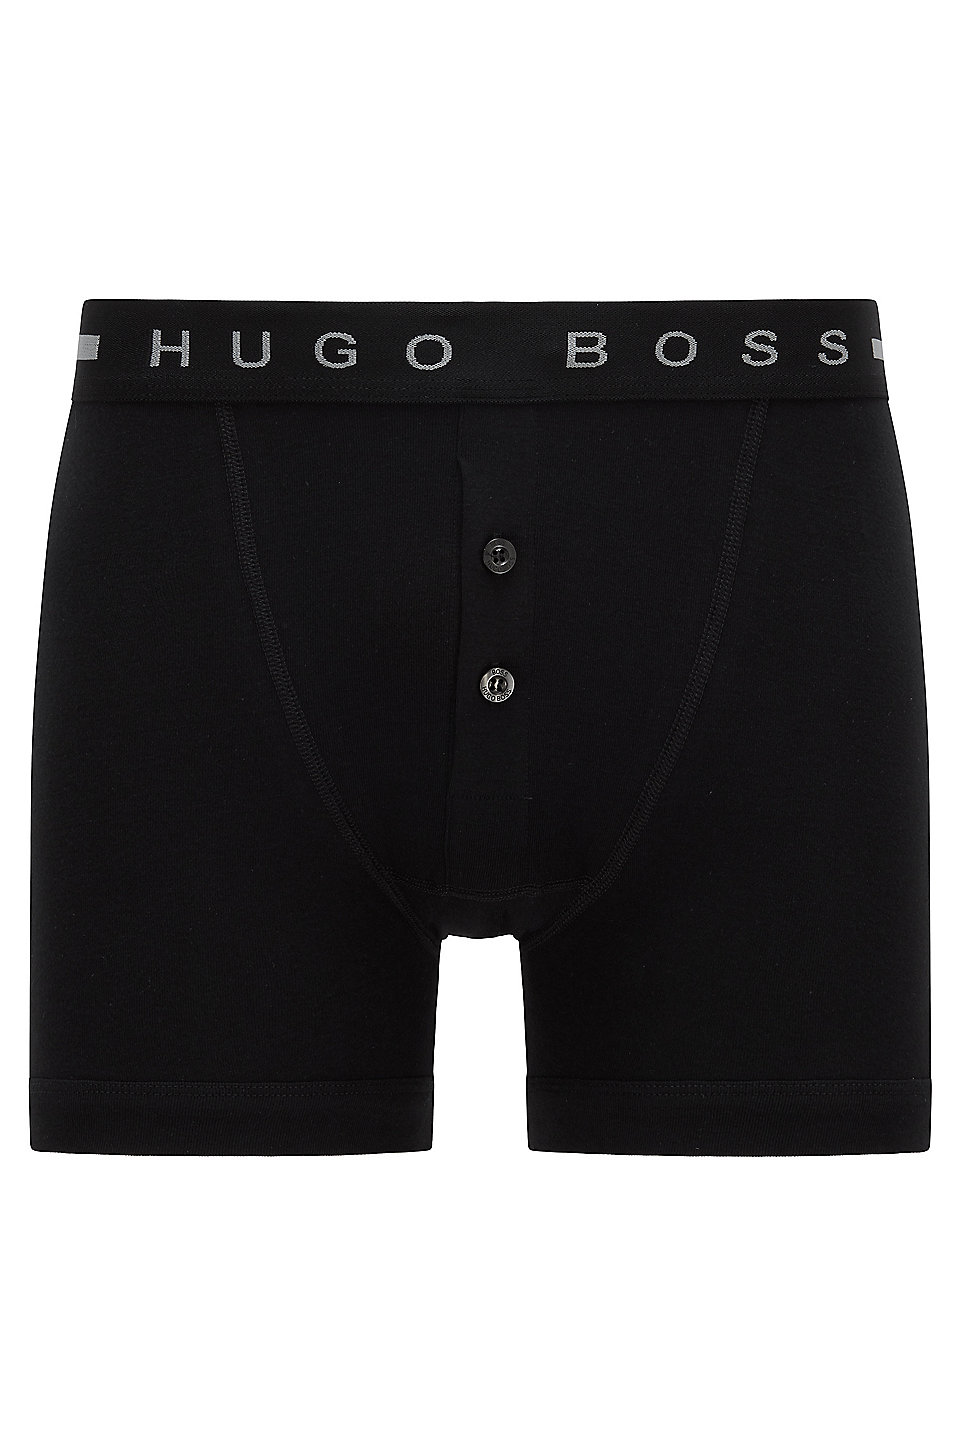 Hugo Boss Mens Trunk Identity